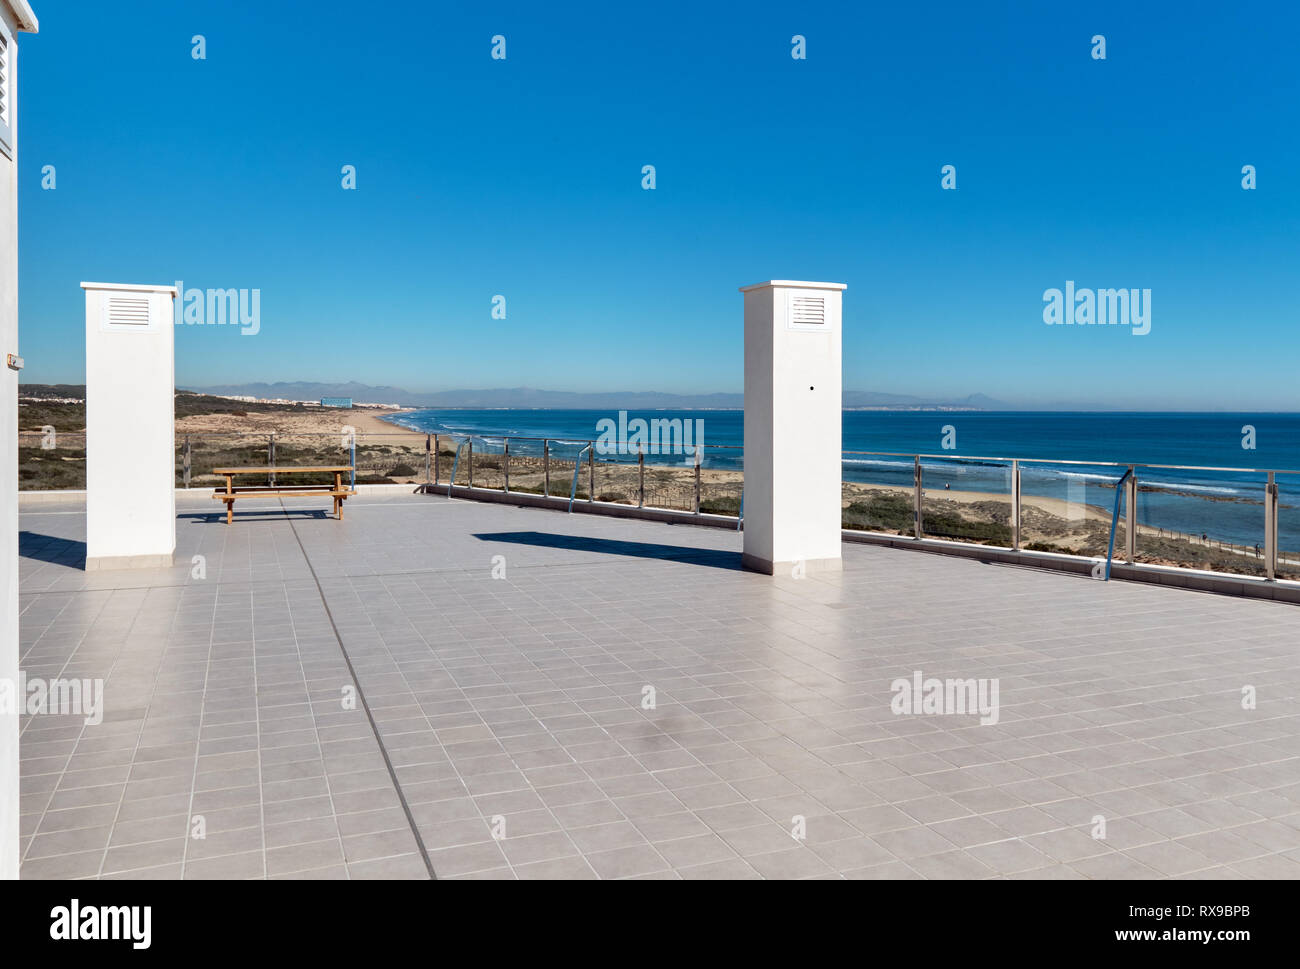 Terrasse spacieuse carrelée parquet gris vide verre transparent limite de clôture et seul banc avec vue magnifique sur la mer Méditerranée, bleu clair Banque D'Images